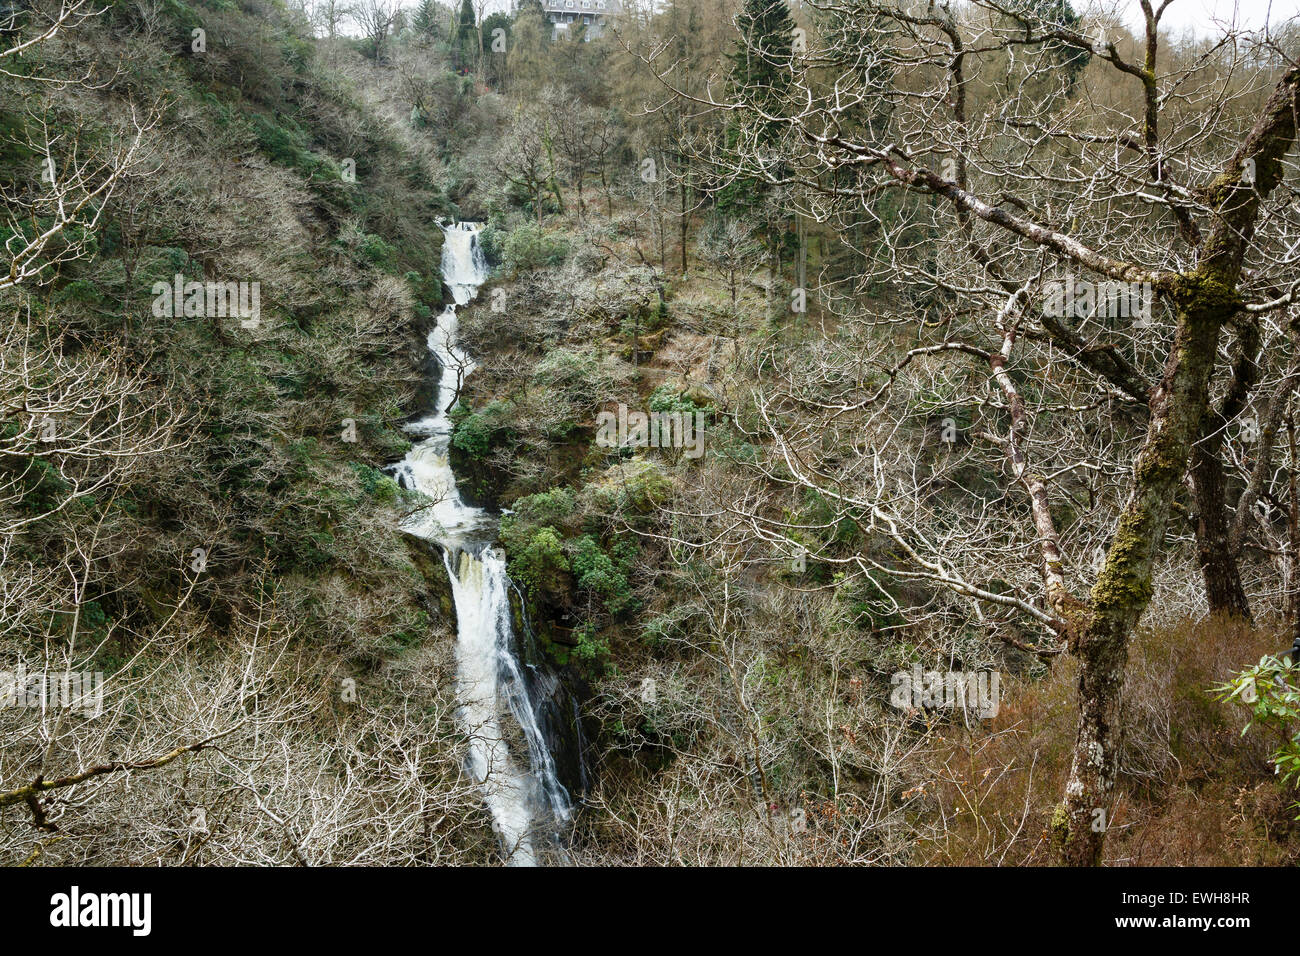 Gyfarllwyd Falls, Devil's Bridge, Rheidol Valley, Ceredigion, Wales Stock Photo